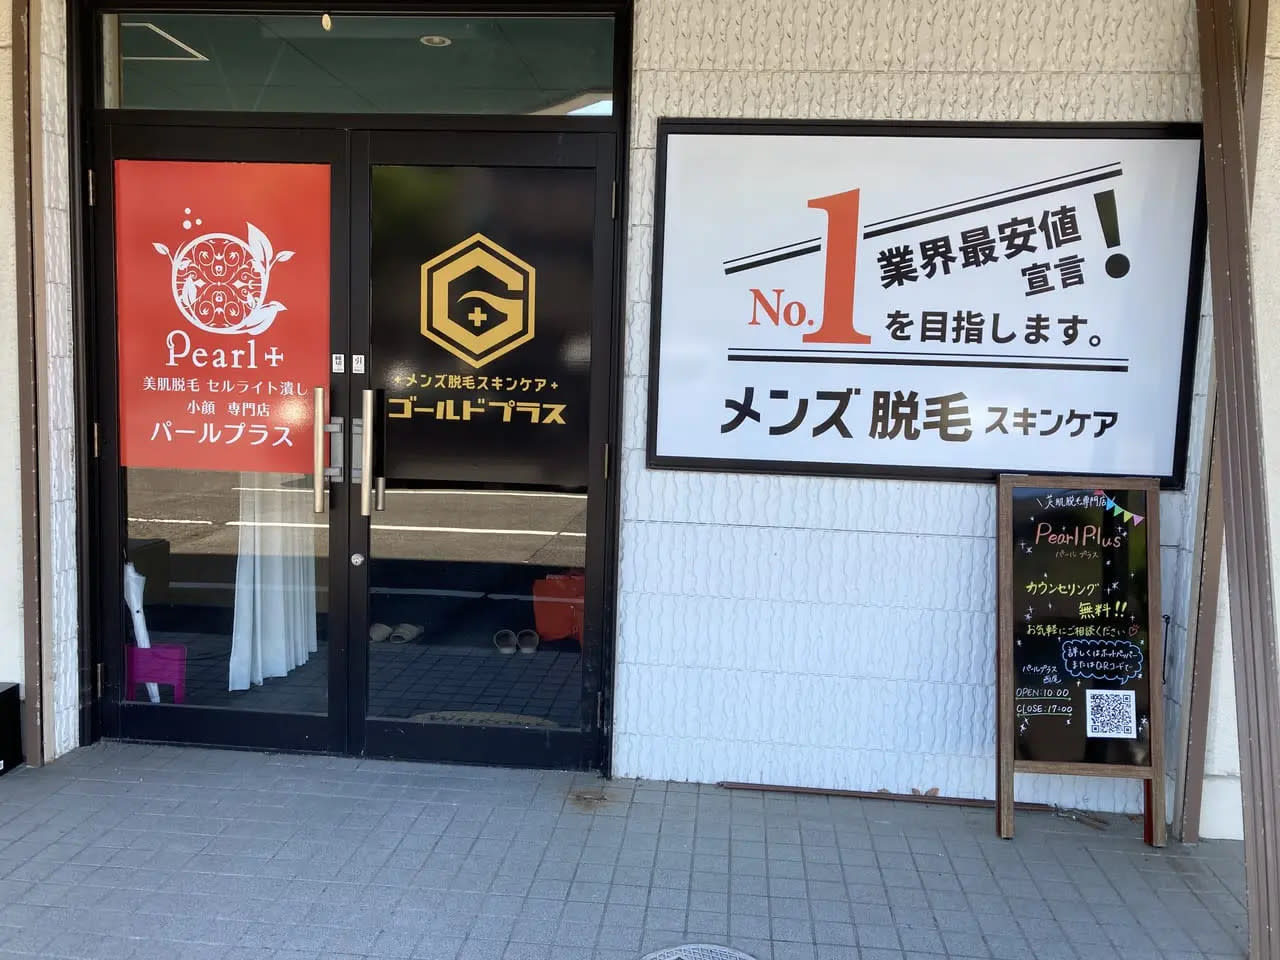 メンズ脱毛スキンケア GOLD PLUS 大田原店のアイキャッチ画像